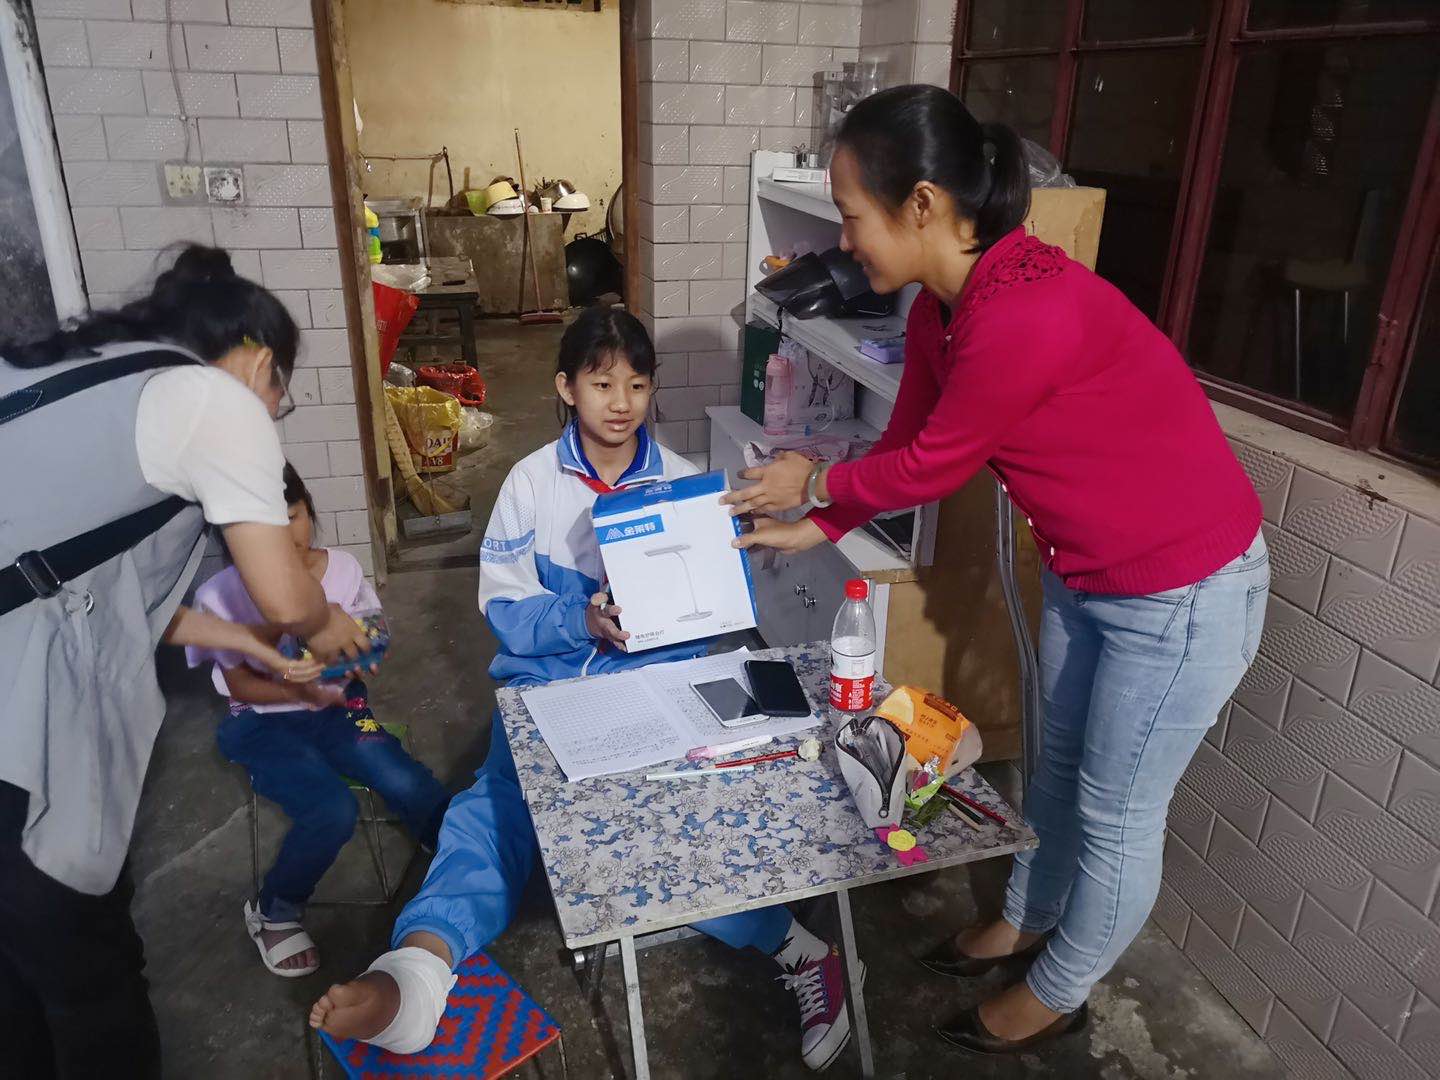 臨滄市工業投資經營有限公司工會委員會關于開展“六一”兒童節走訪慰問困難